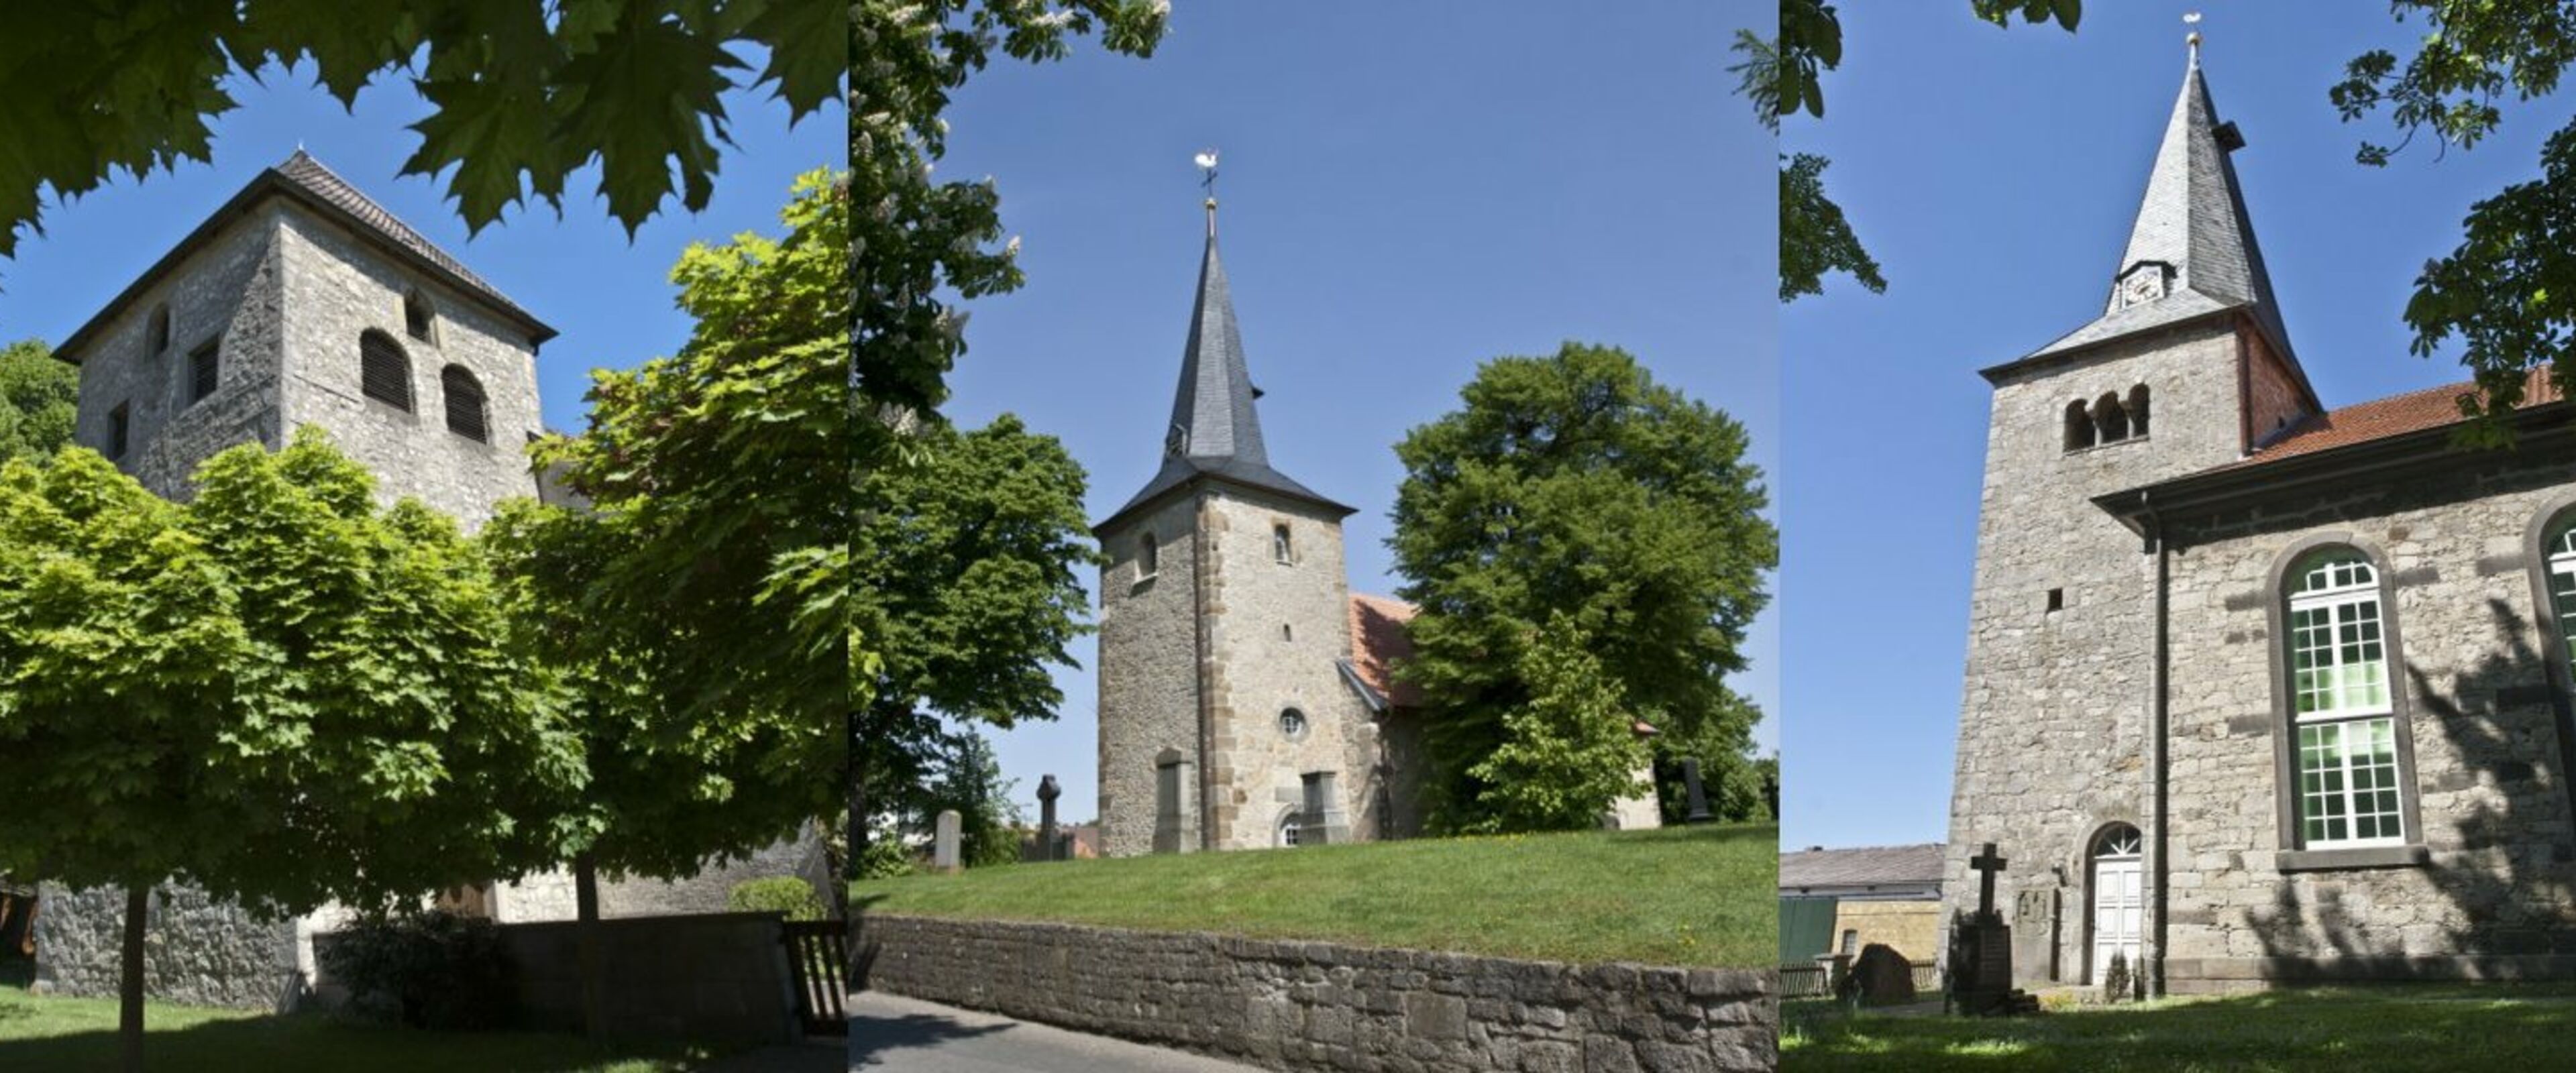 Collage für Startseite, Kirchen Gr. Lobke, Gödringen, Oesselse